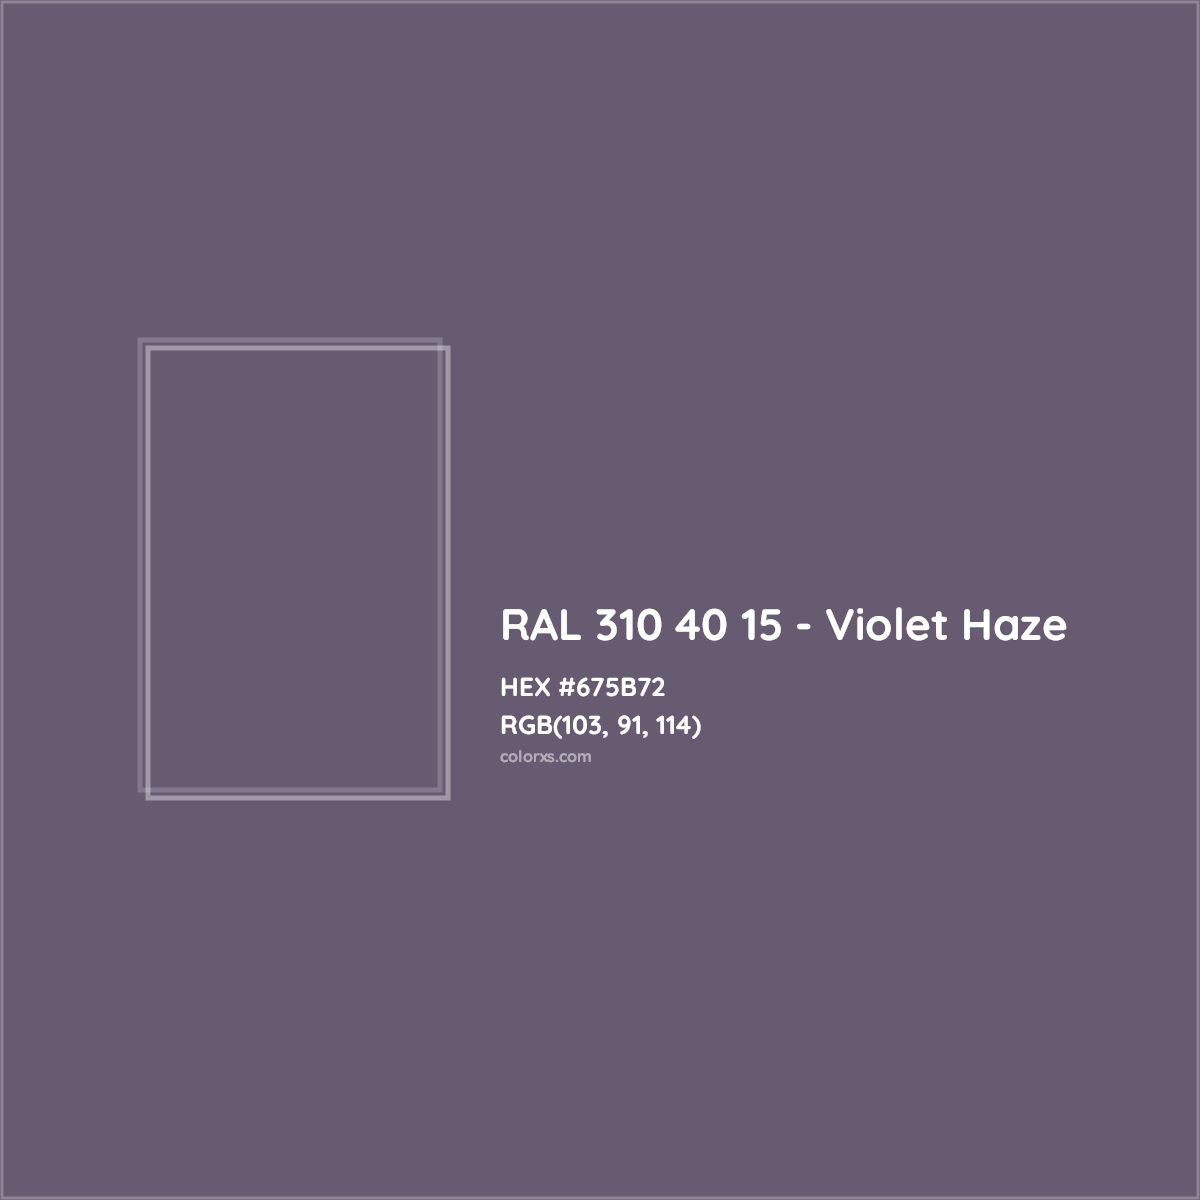 HEX #675B72 RAL 310 40 15 - Violet Haze CMS RAL Design - Color Code